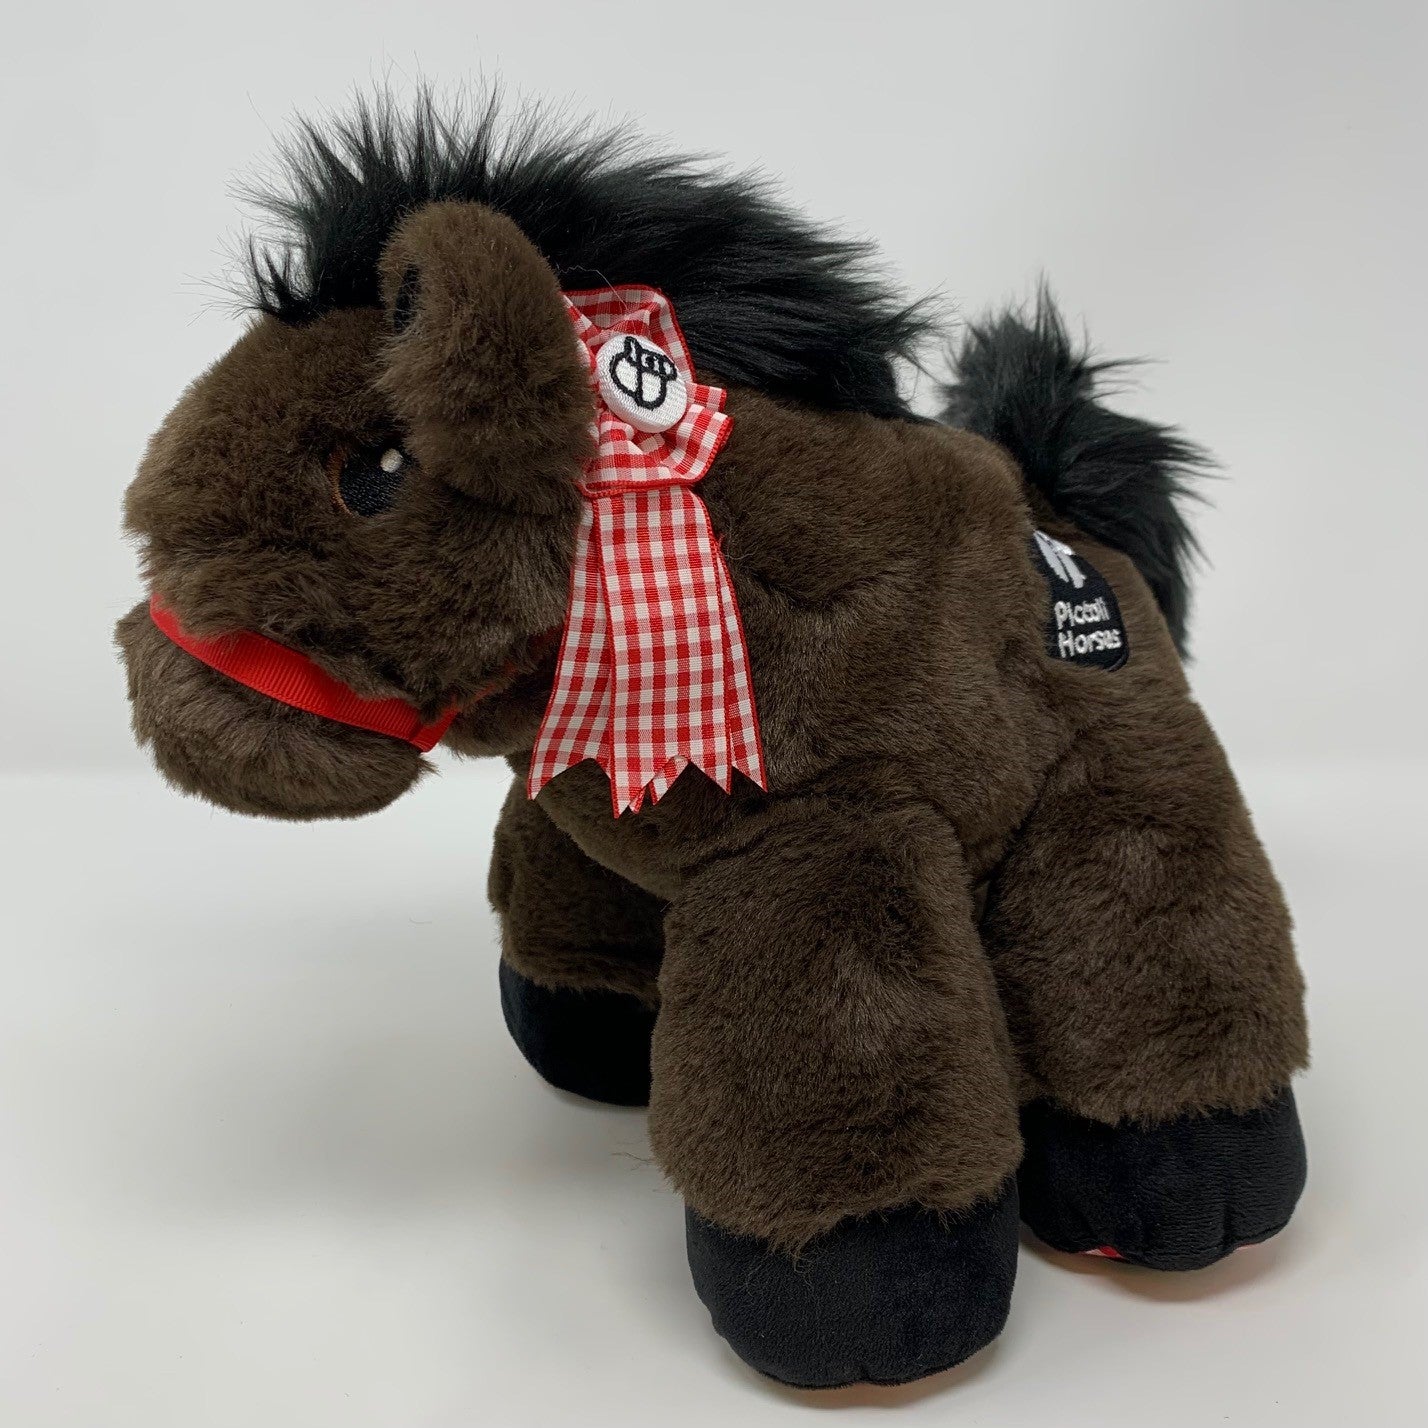 Piccoli Classic Stuffed Horse